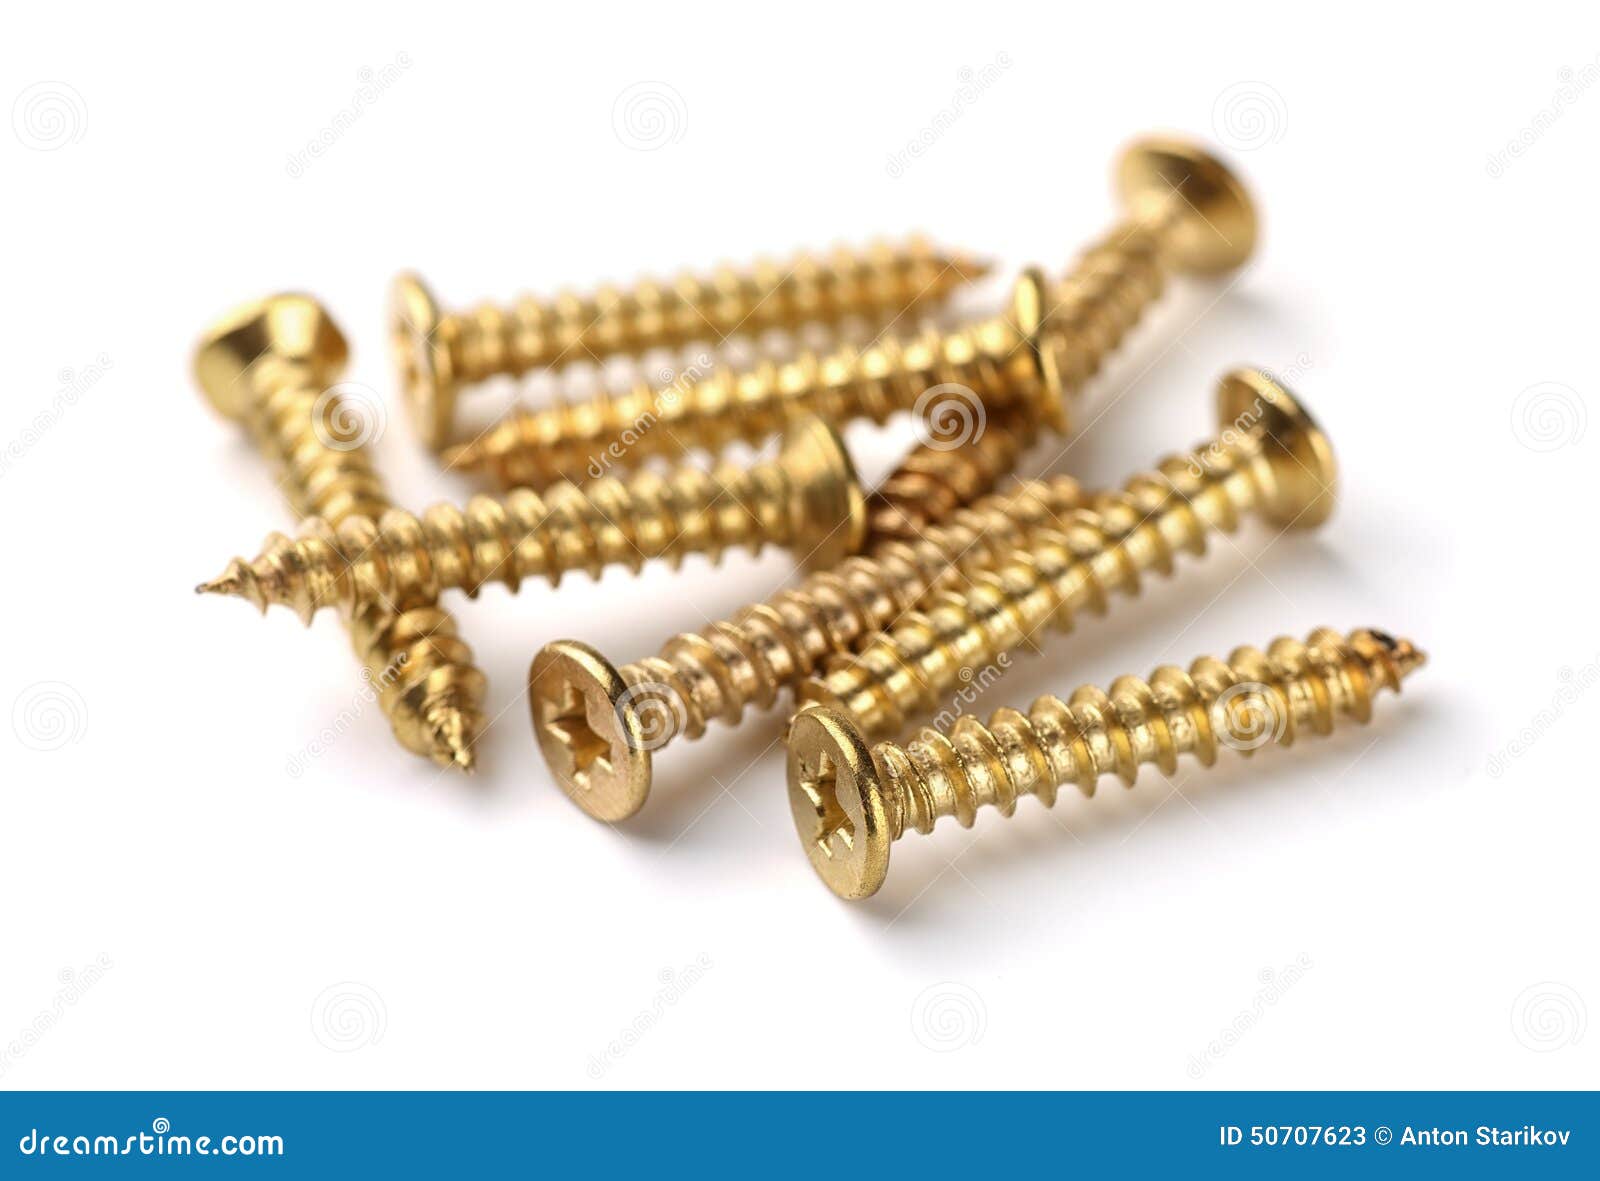 golden screws